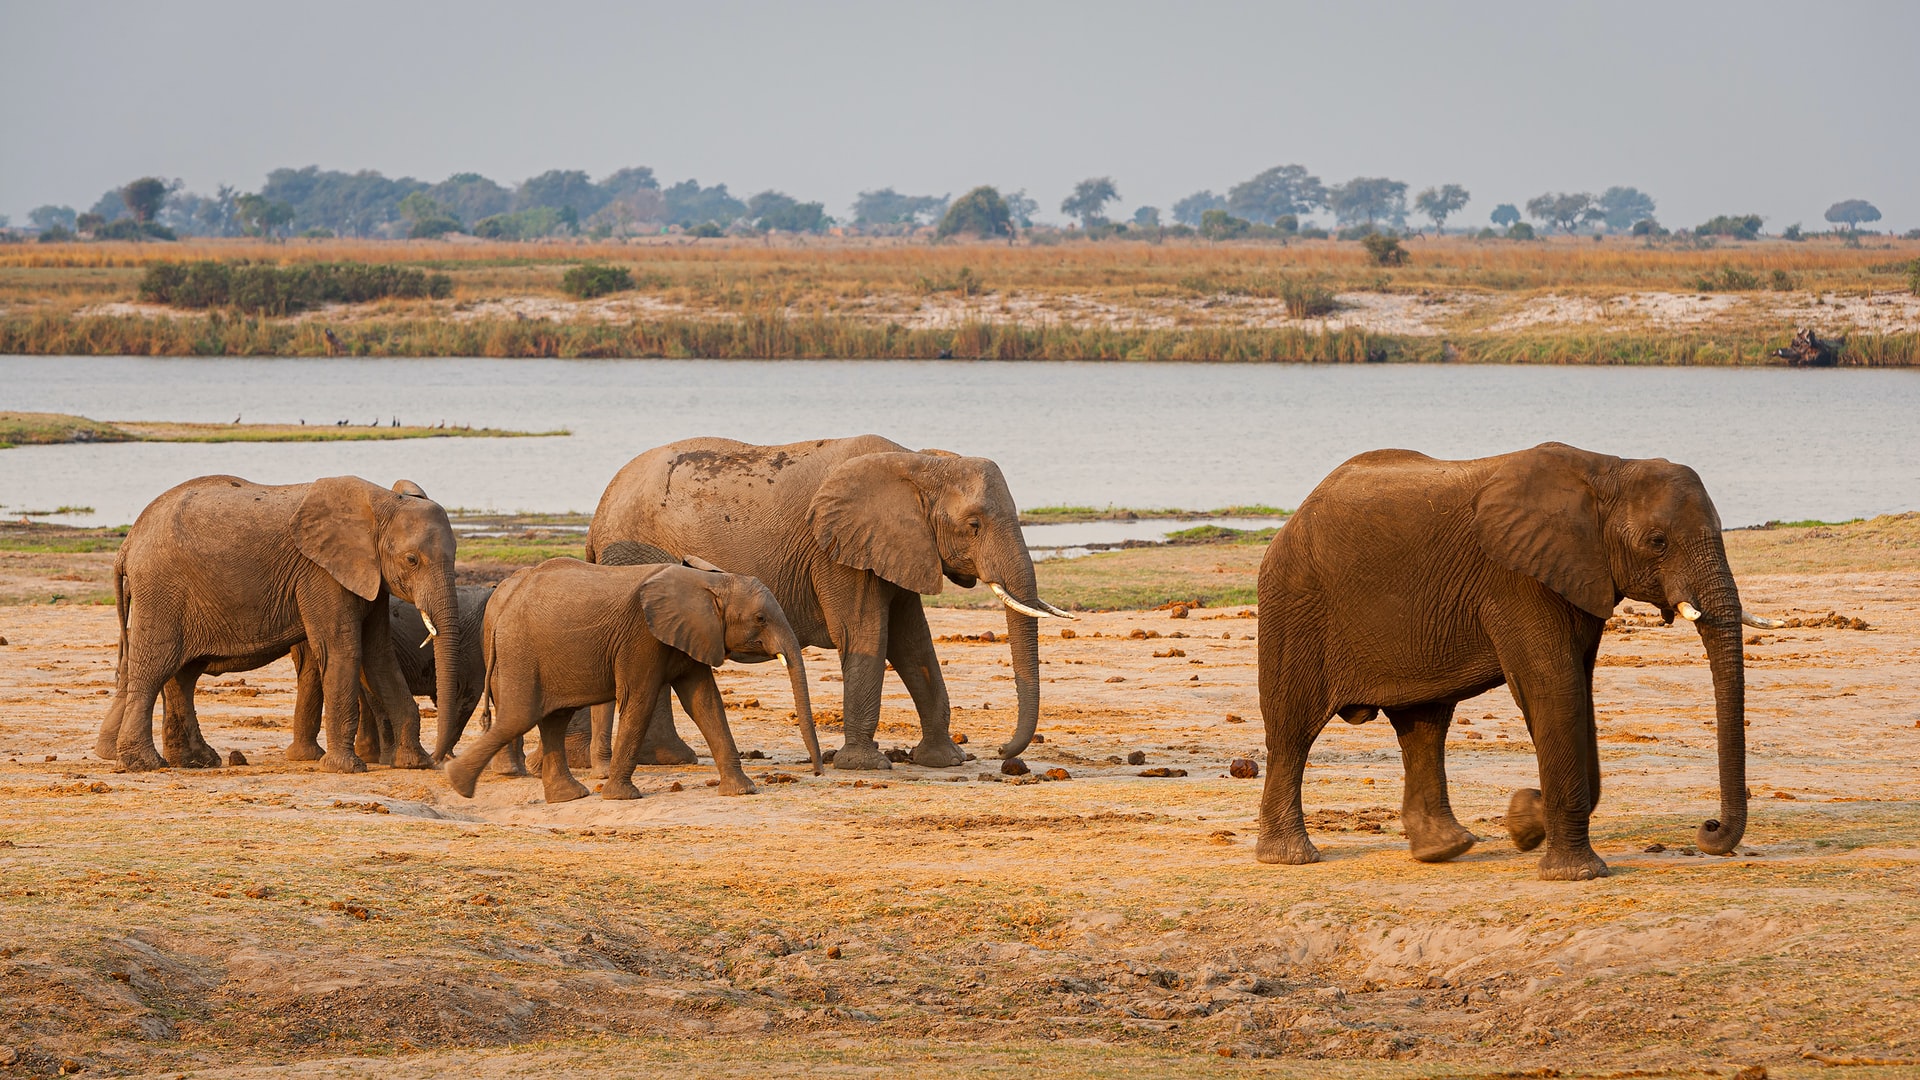 Si se restauraran las poblaciones históricas de 1,1 millones de elefantes en la cuenca del Congo en África central, podrían almacenar de forma natural 85 millones de toneladas adicionales de carbono al aumentar la capacidad de los árboles de las copas superiores para capturar carbono.